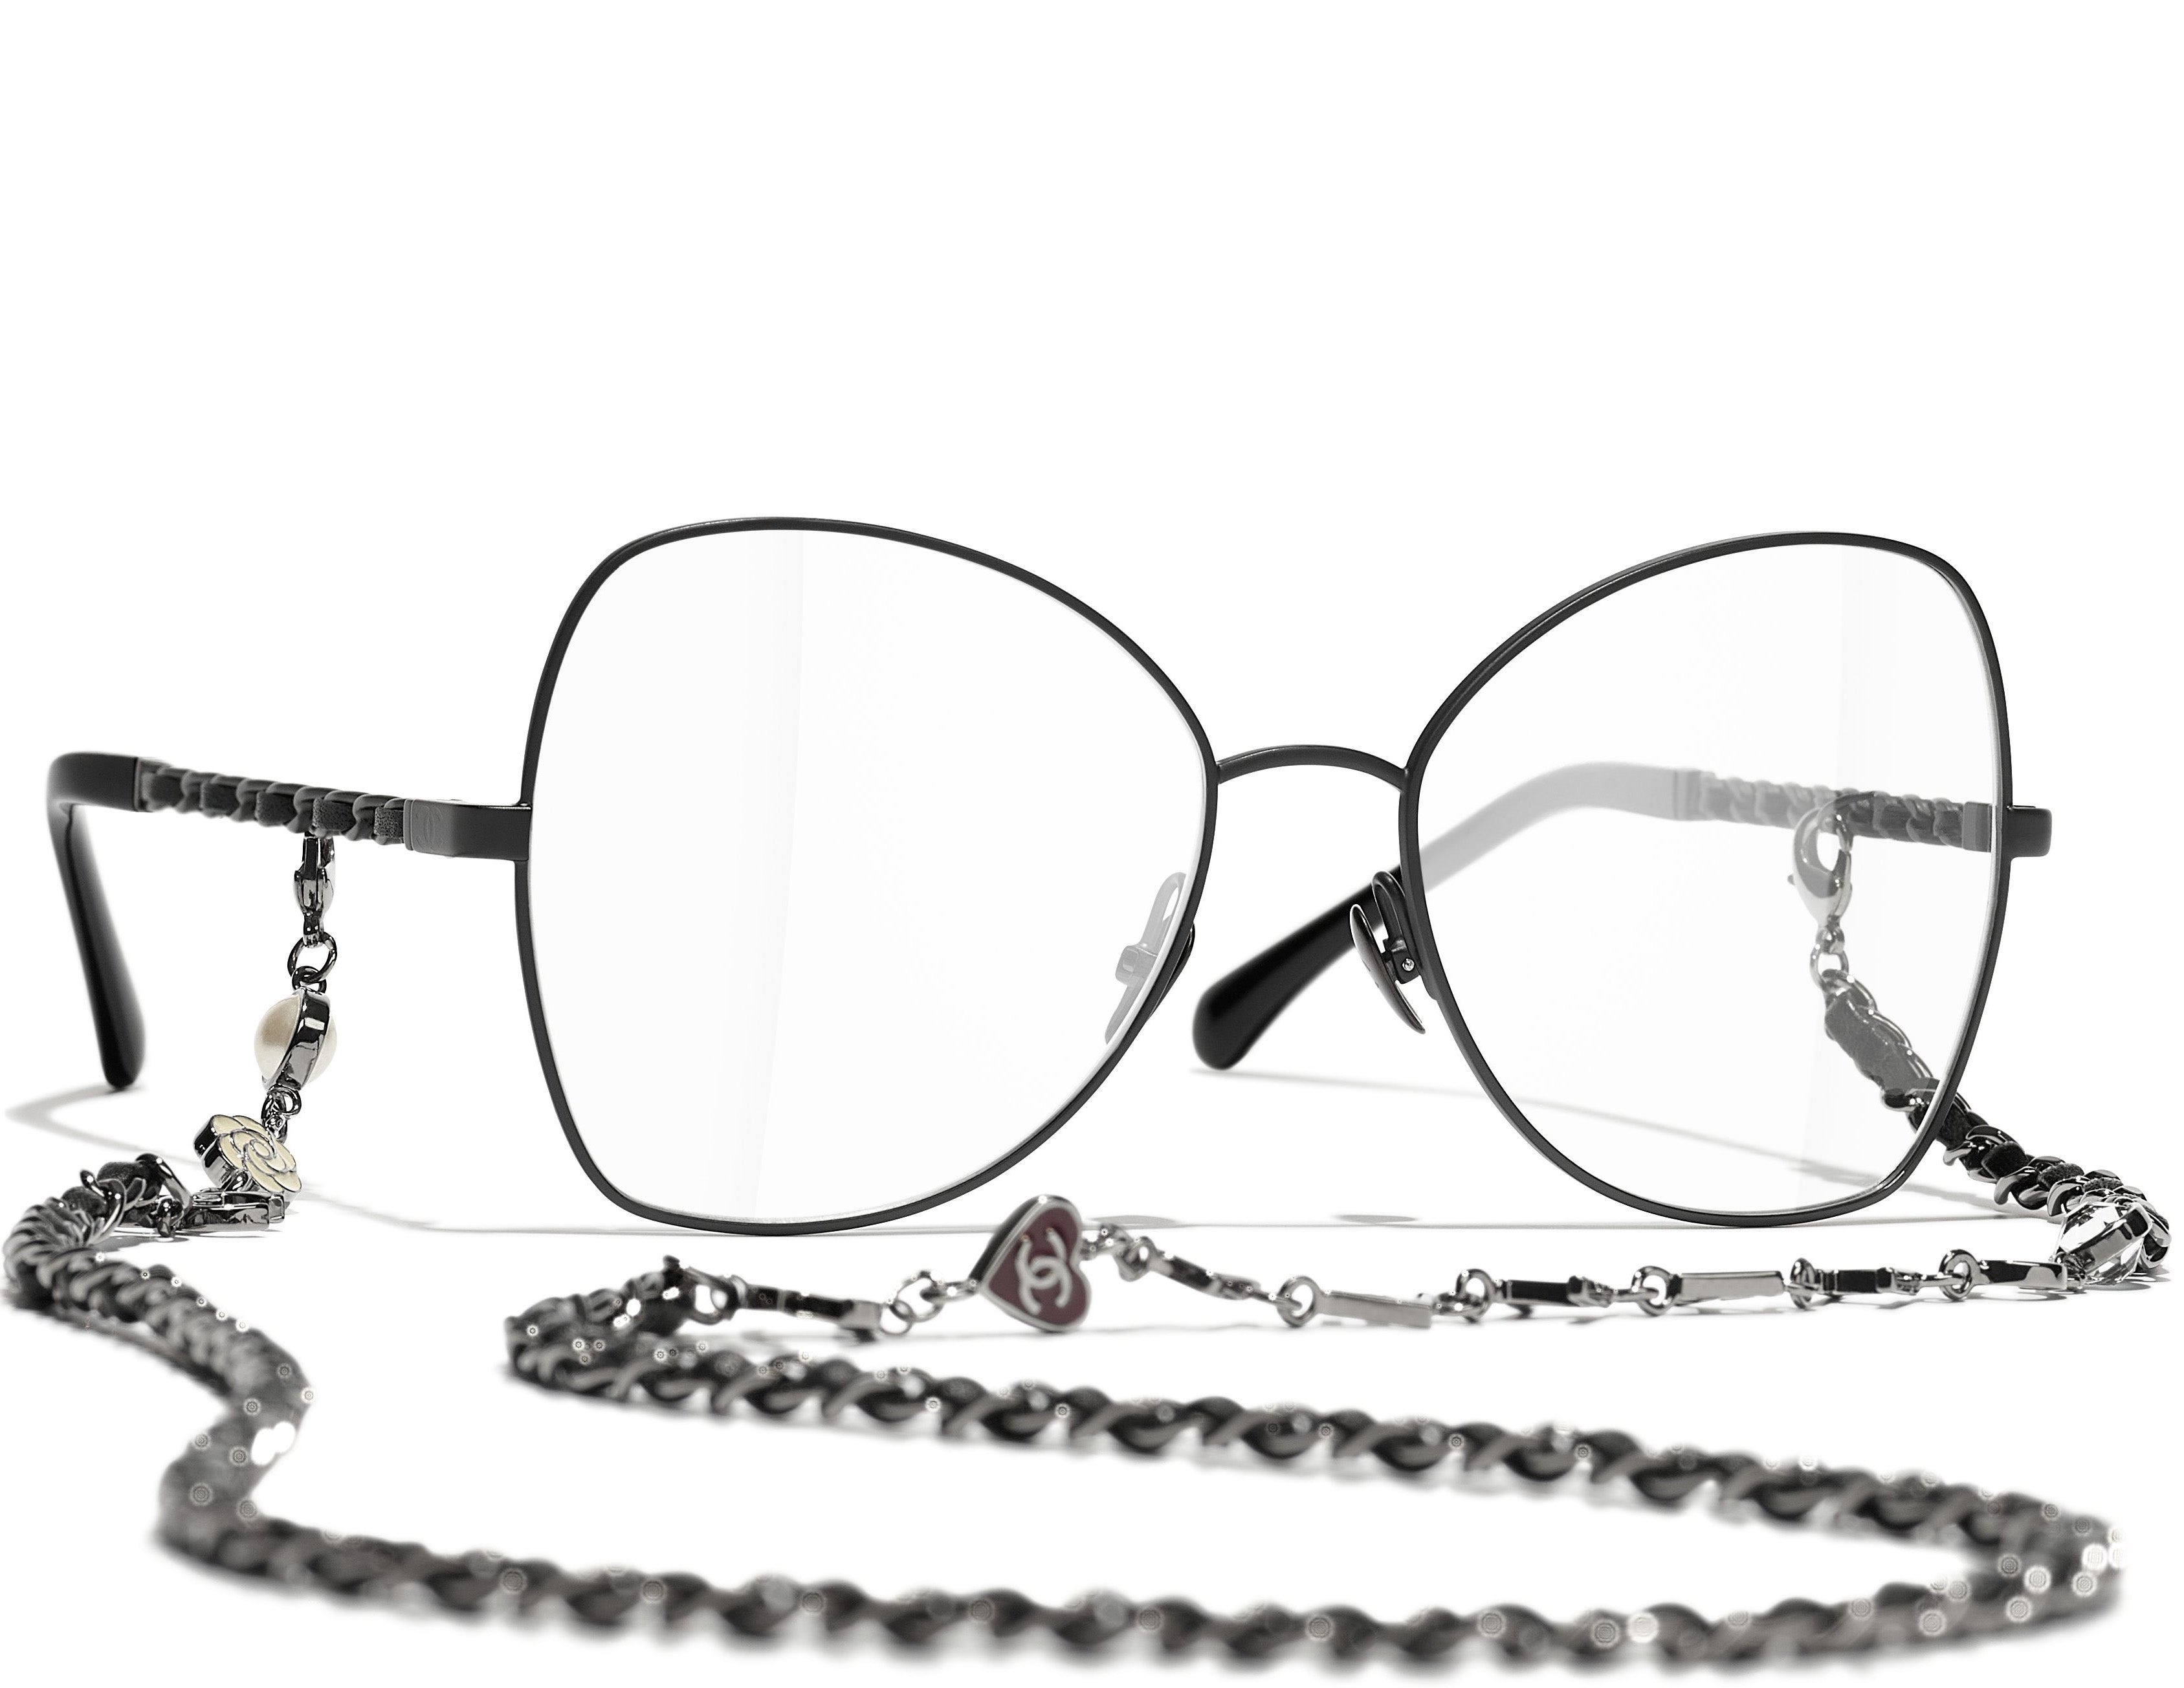 Chanel - Butterfly Sunglasses - Black White Gray - Chanel Eyewear - Avvenice